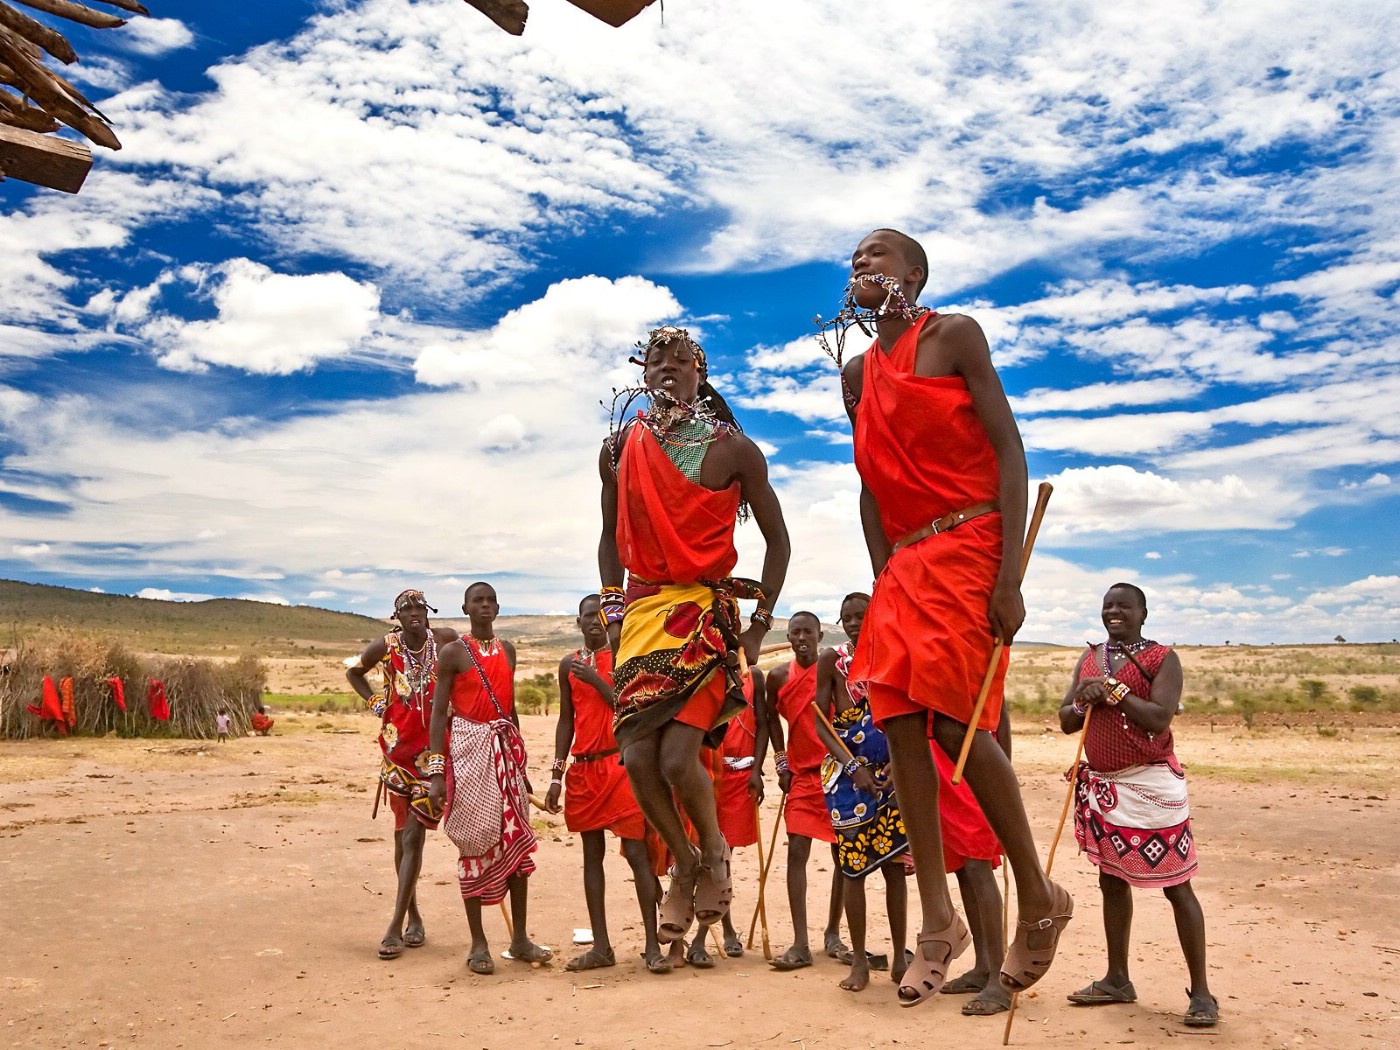 壁纸1400x1050文化之旅 地理人文景观壁纸精选 第一辑 Maasai Warriors Dancing Maasai Mara National Reserve Kenya 肯尼亚马塞马拉国家保留地 马塞战士图片壁纸壁纸 文化之旅地理人文景观(一)壁纸 文化之旅地理人文景观(一)图片 文化之旅地理人文景观(一)素材 人文壁纸 人文图库 人文图片素材桌面壁纸